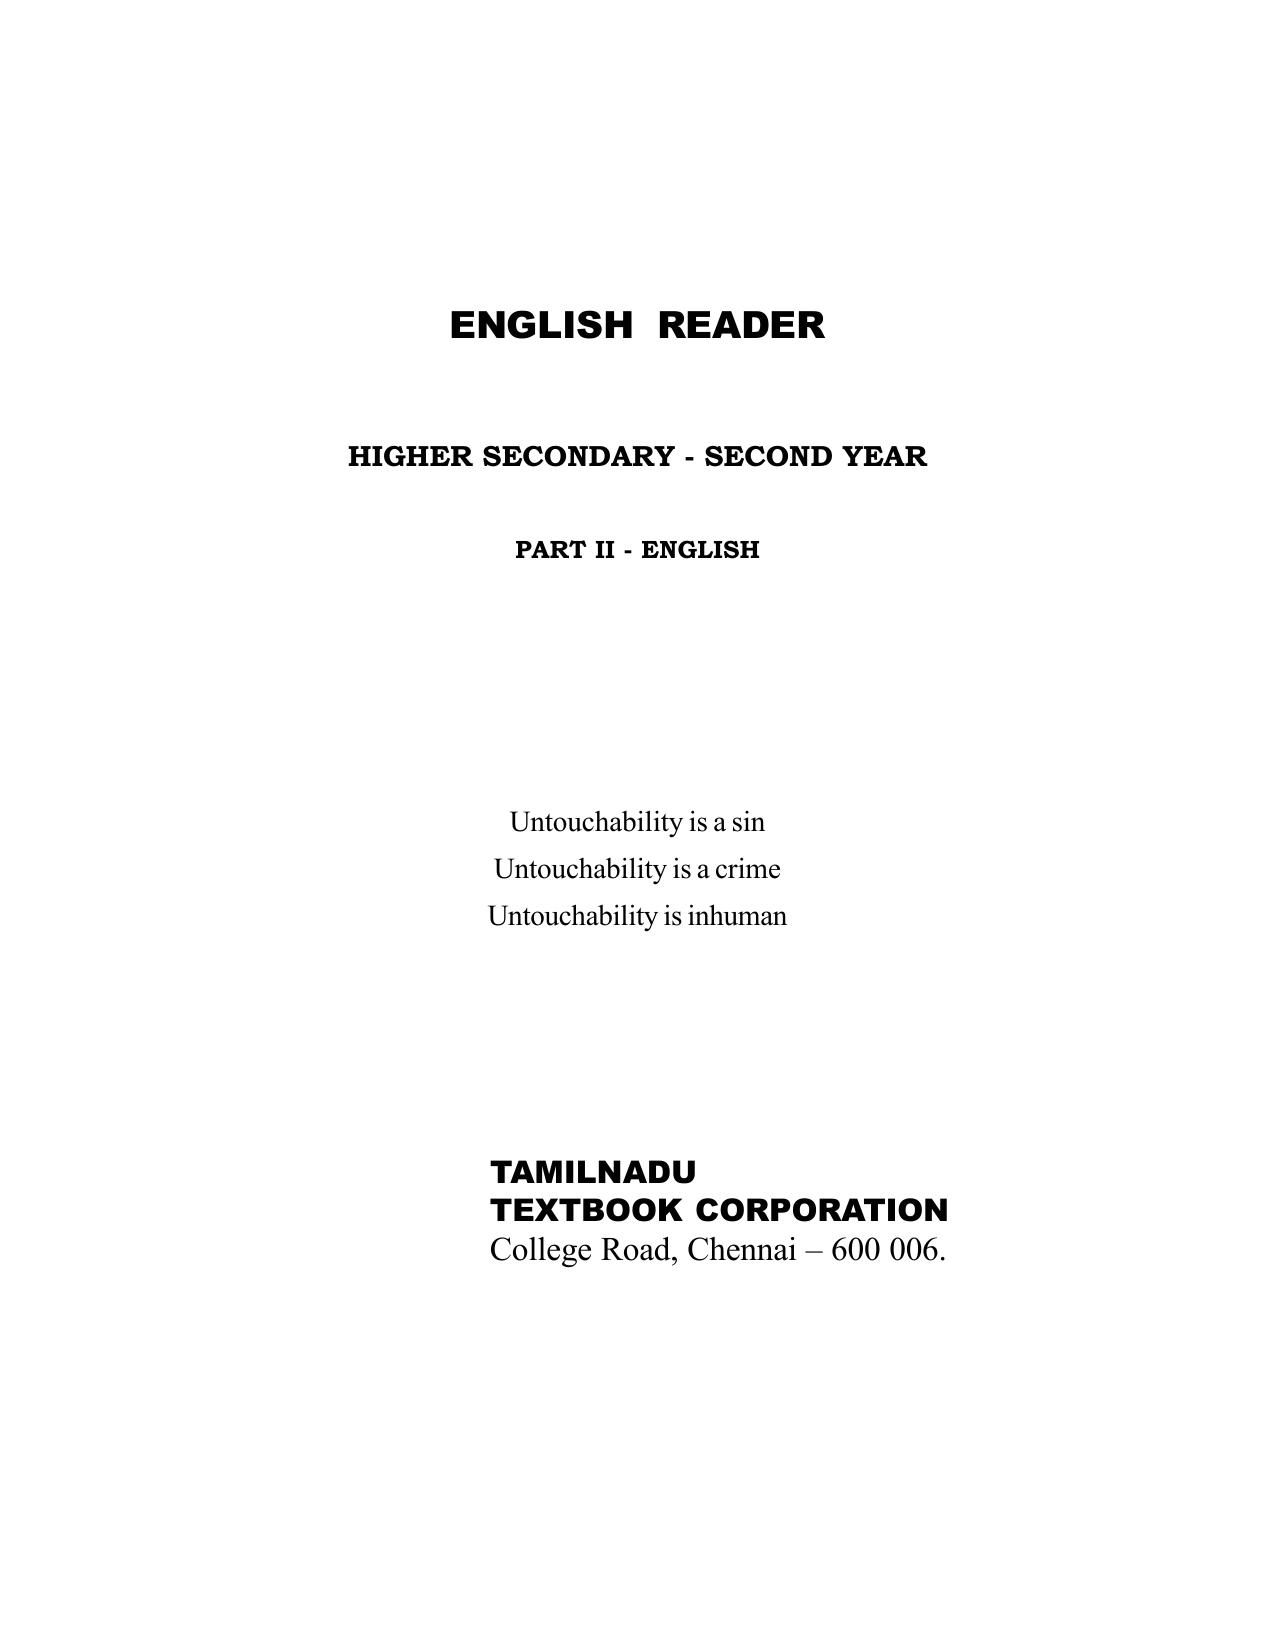 English Reader Coursebook Class 12